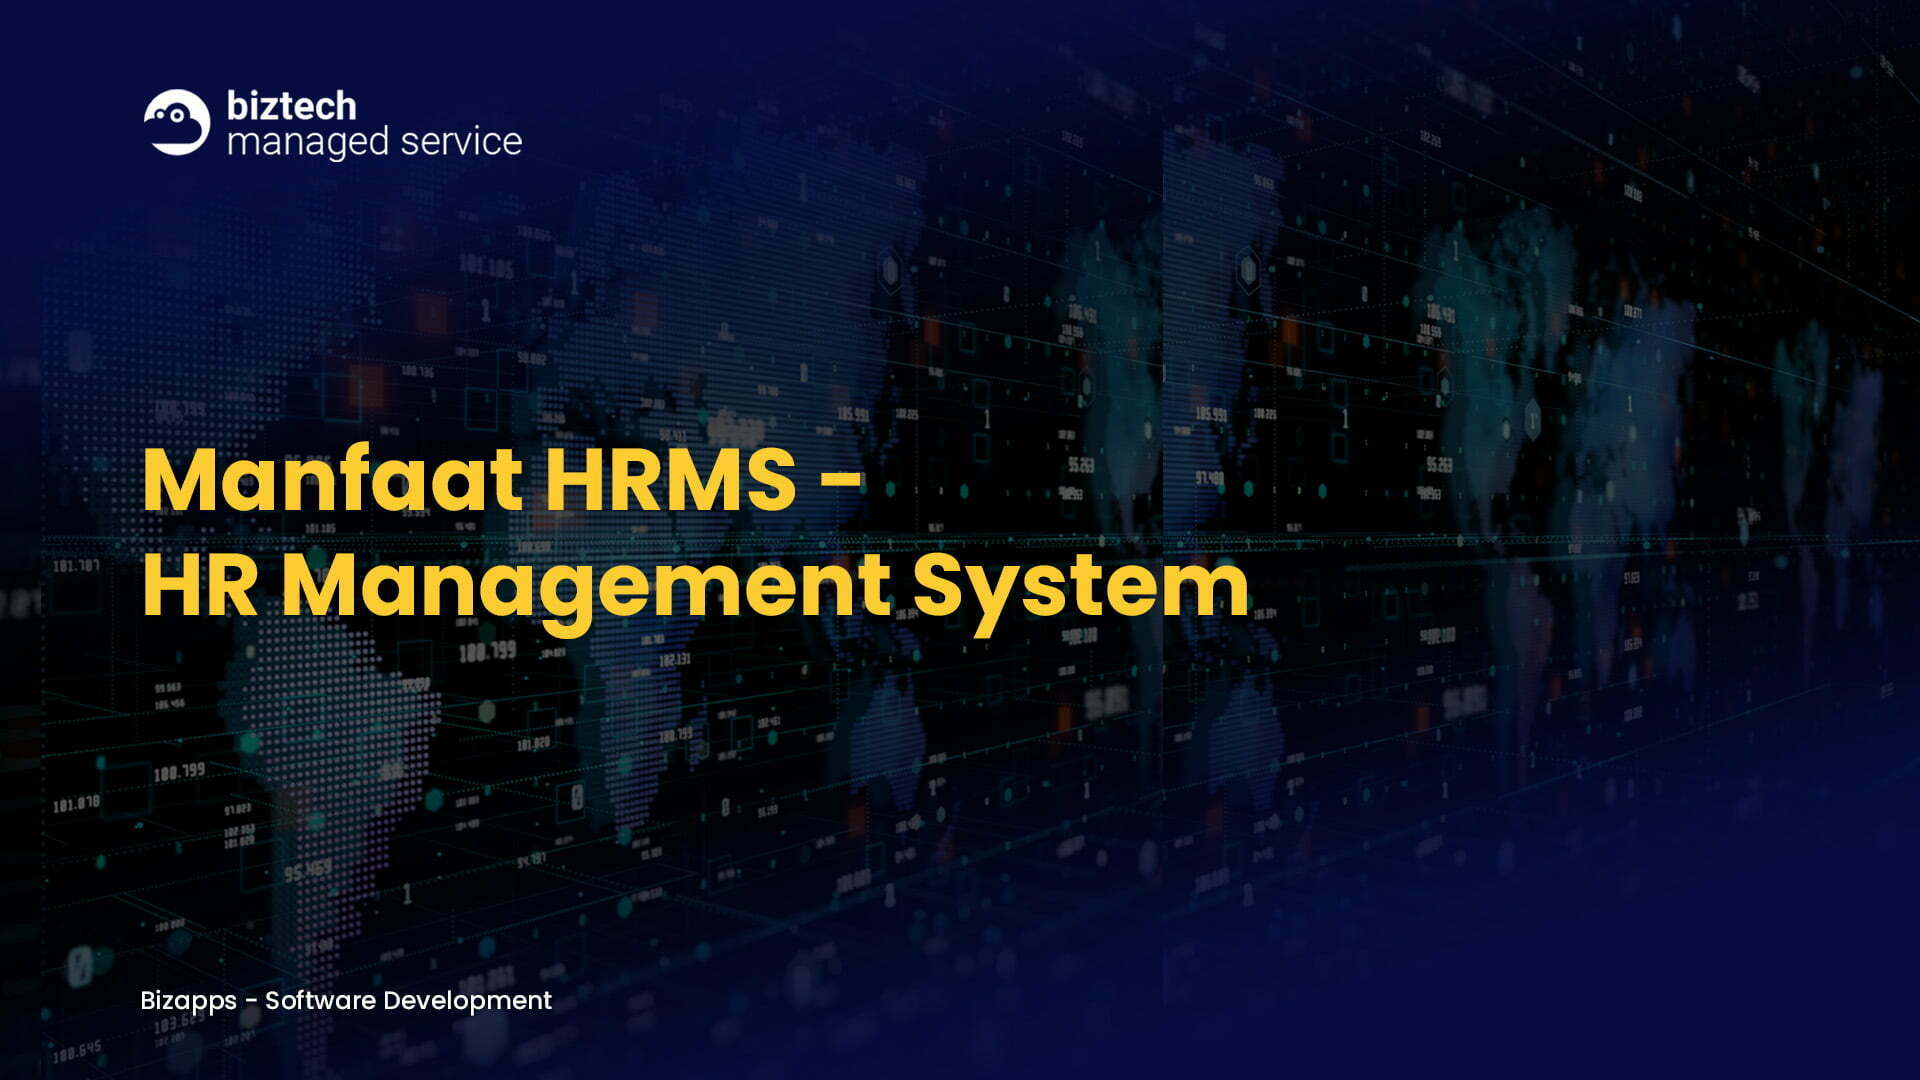 Manfaat HR Management System